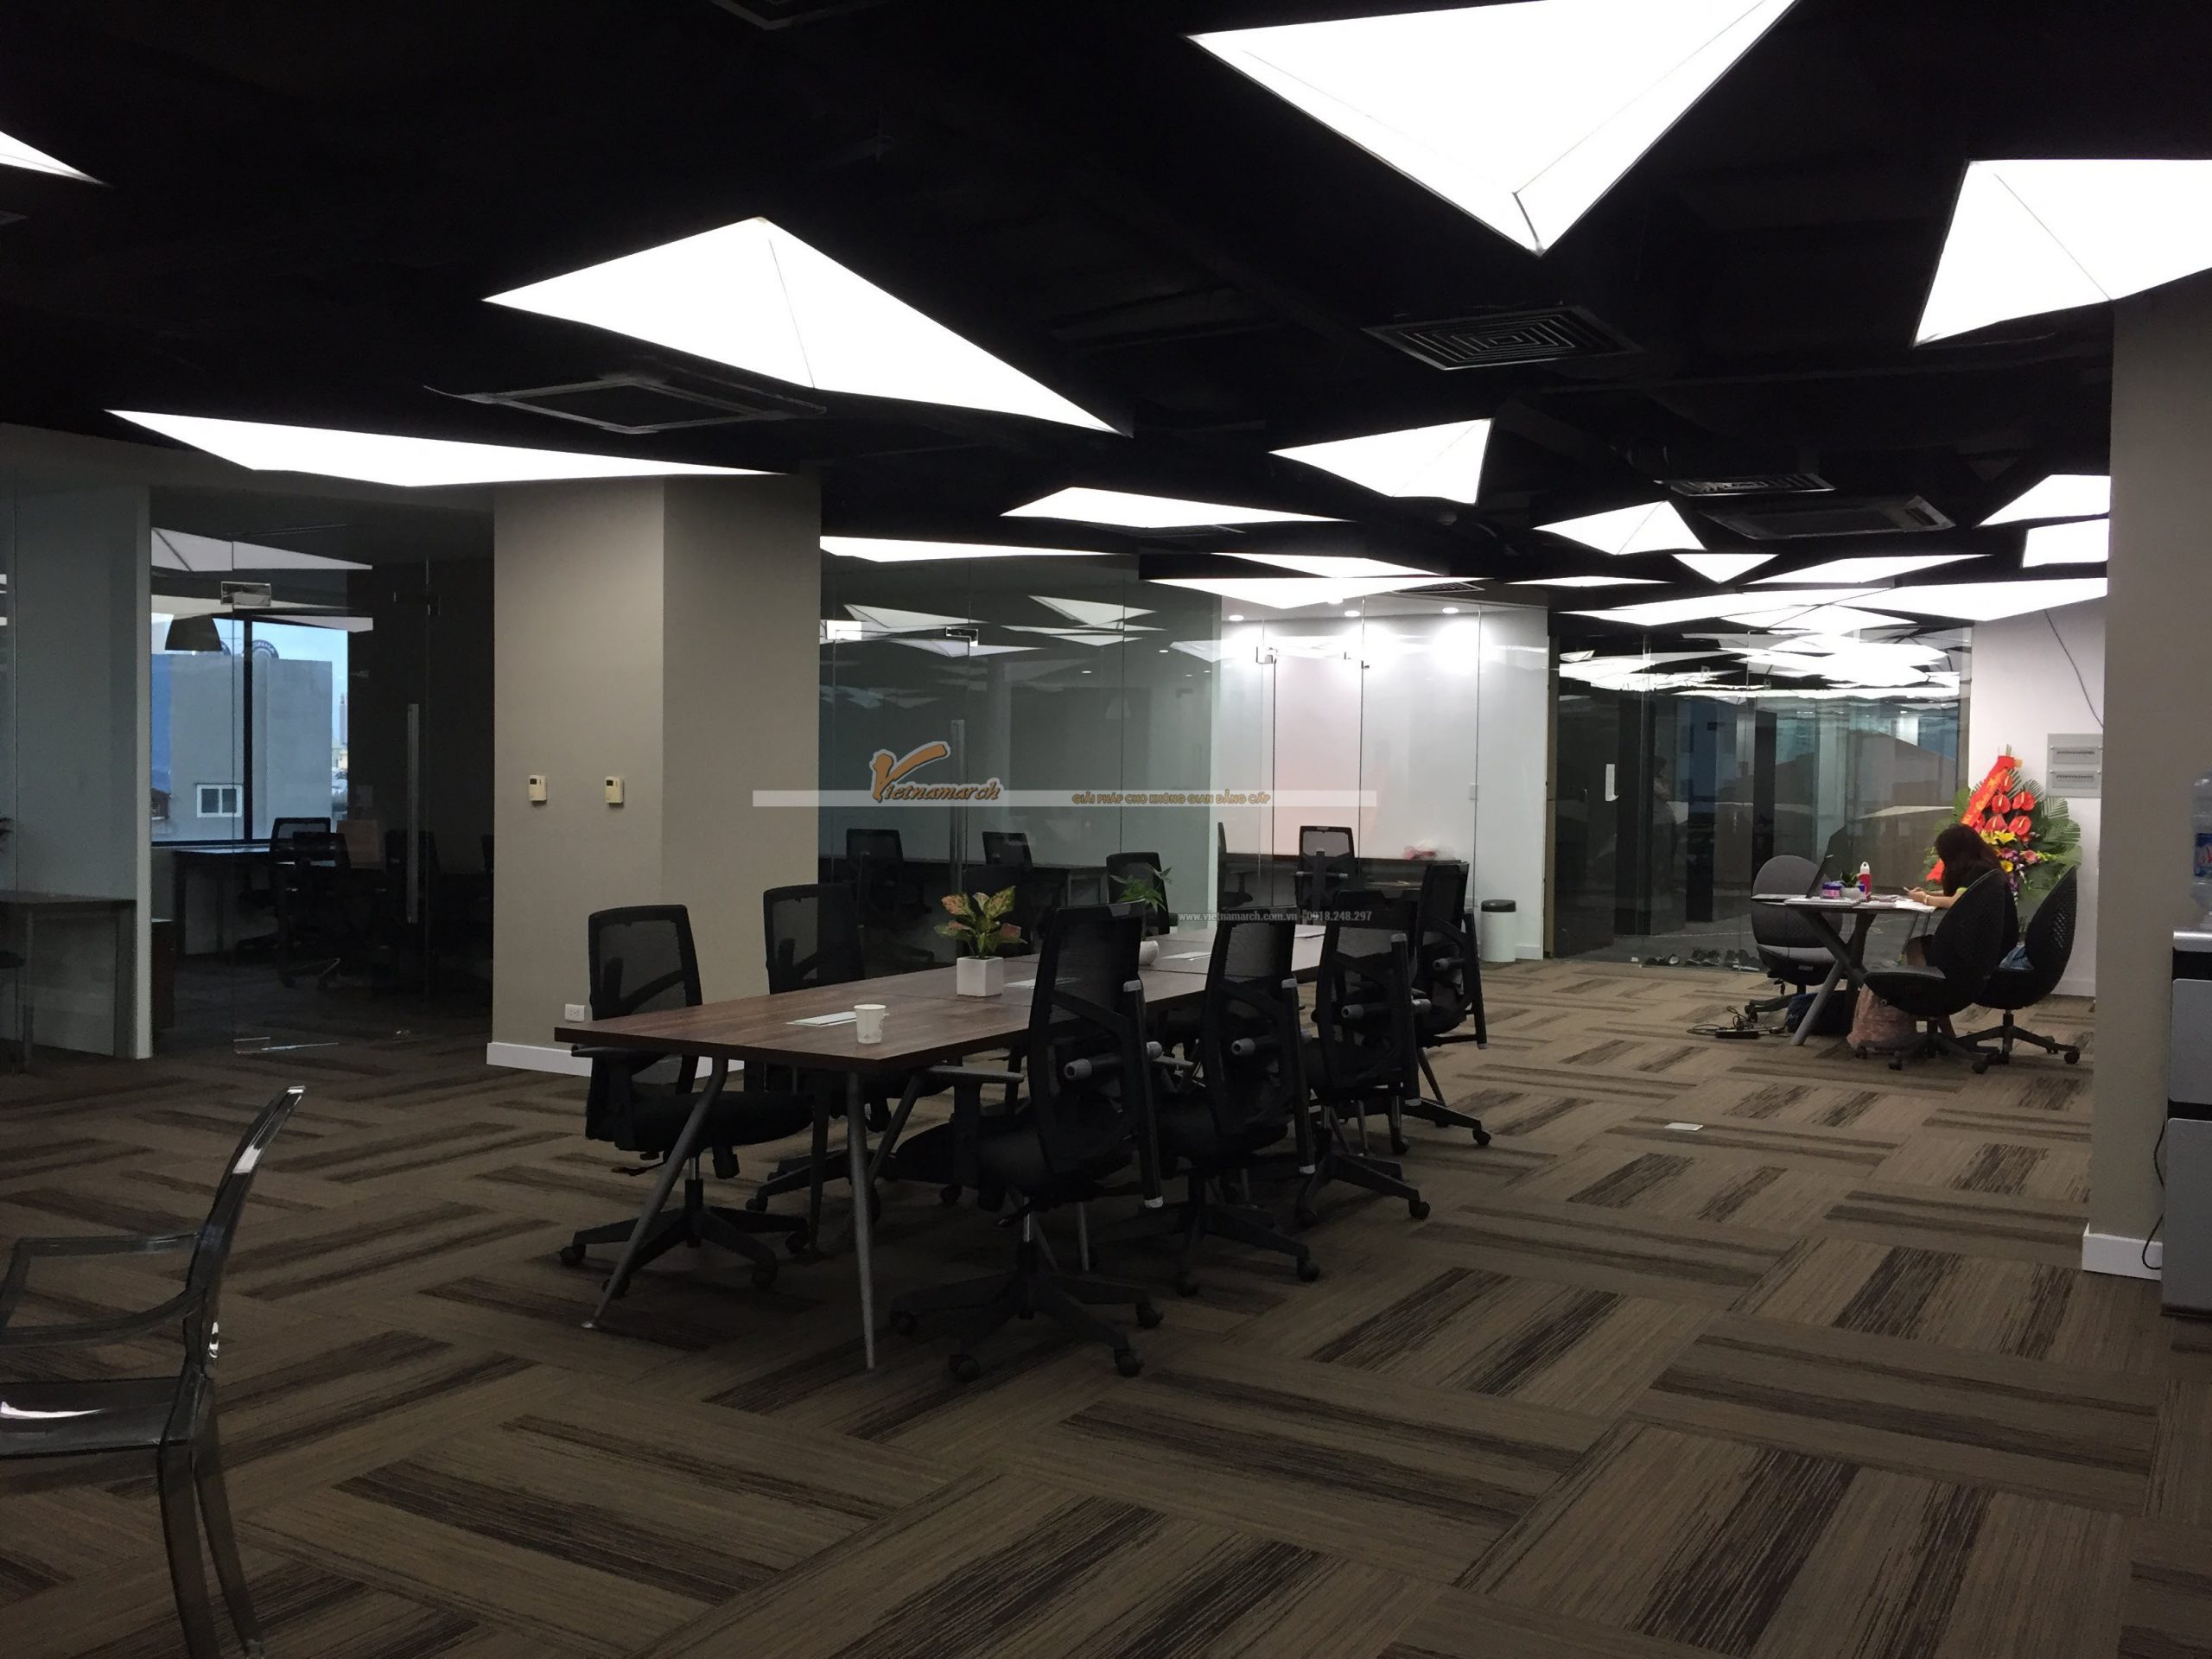 Thiết kế nội thất văn phòng Co-woking space hiện đại tầng 5 Kim Mã- Nhân tố thúc đẩy Start-up thành công